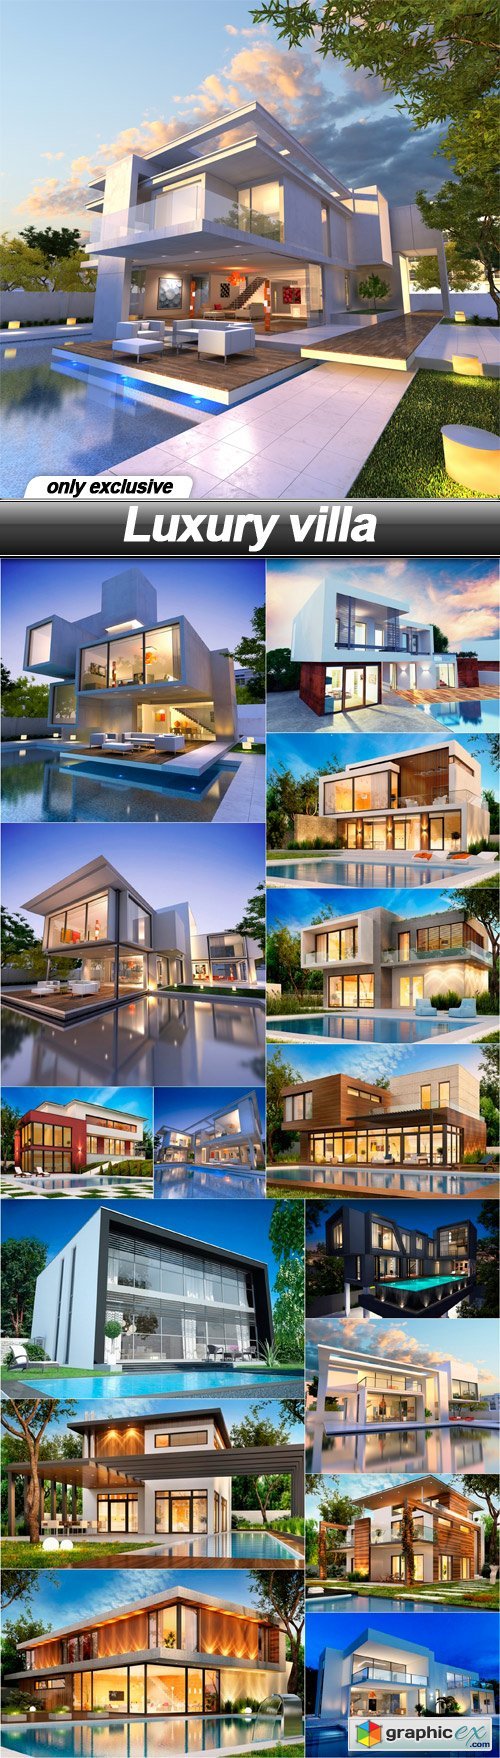 Luxury villa - 16 UHQ JPEG